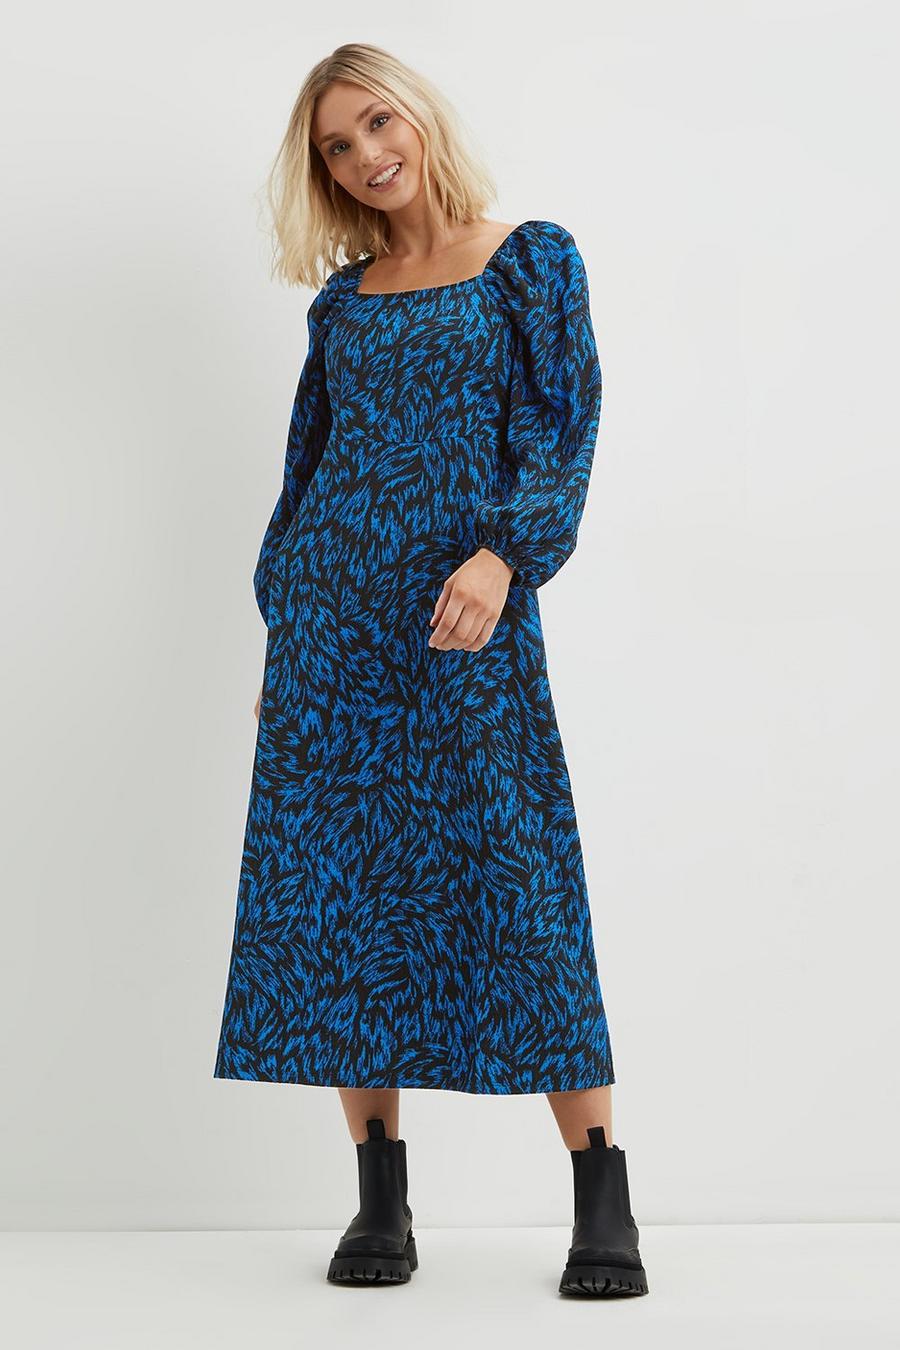 Petite Blue Printed Square Neck Midi Dress